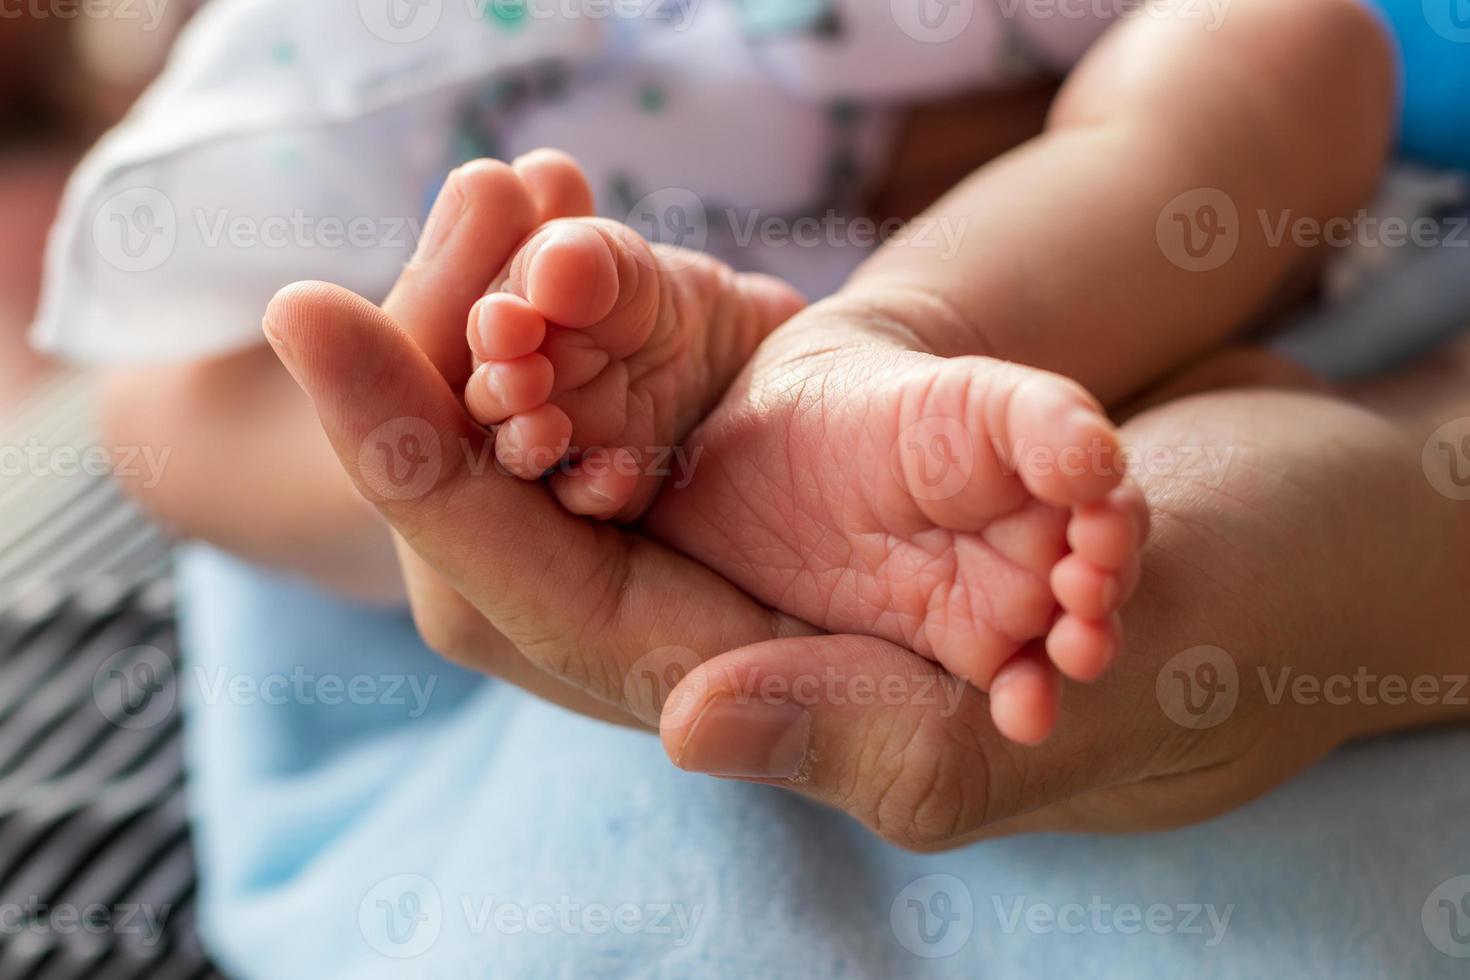 ambos pies de un bebé recién nacido y una mano femenina. foto